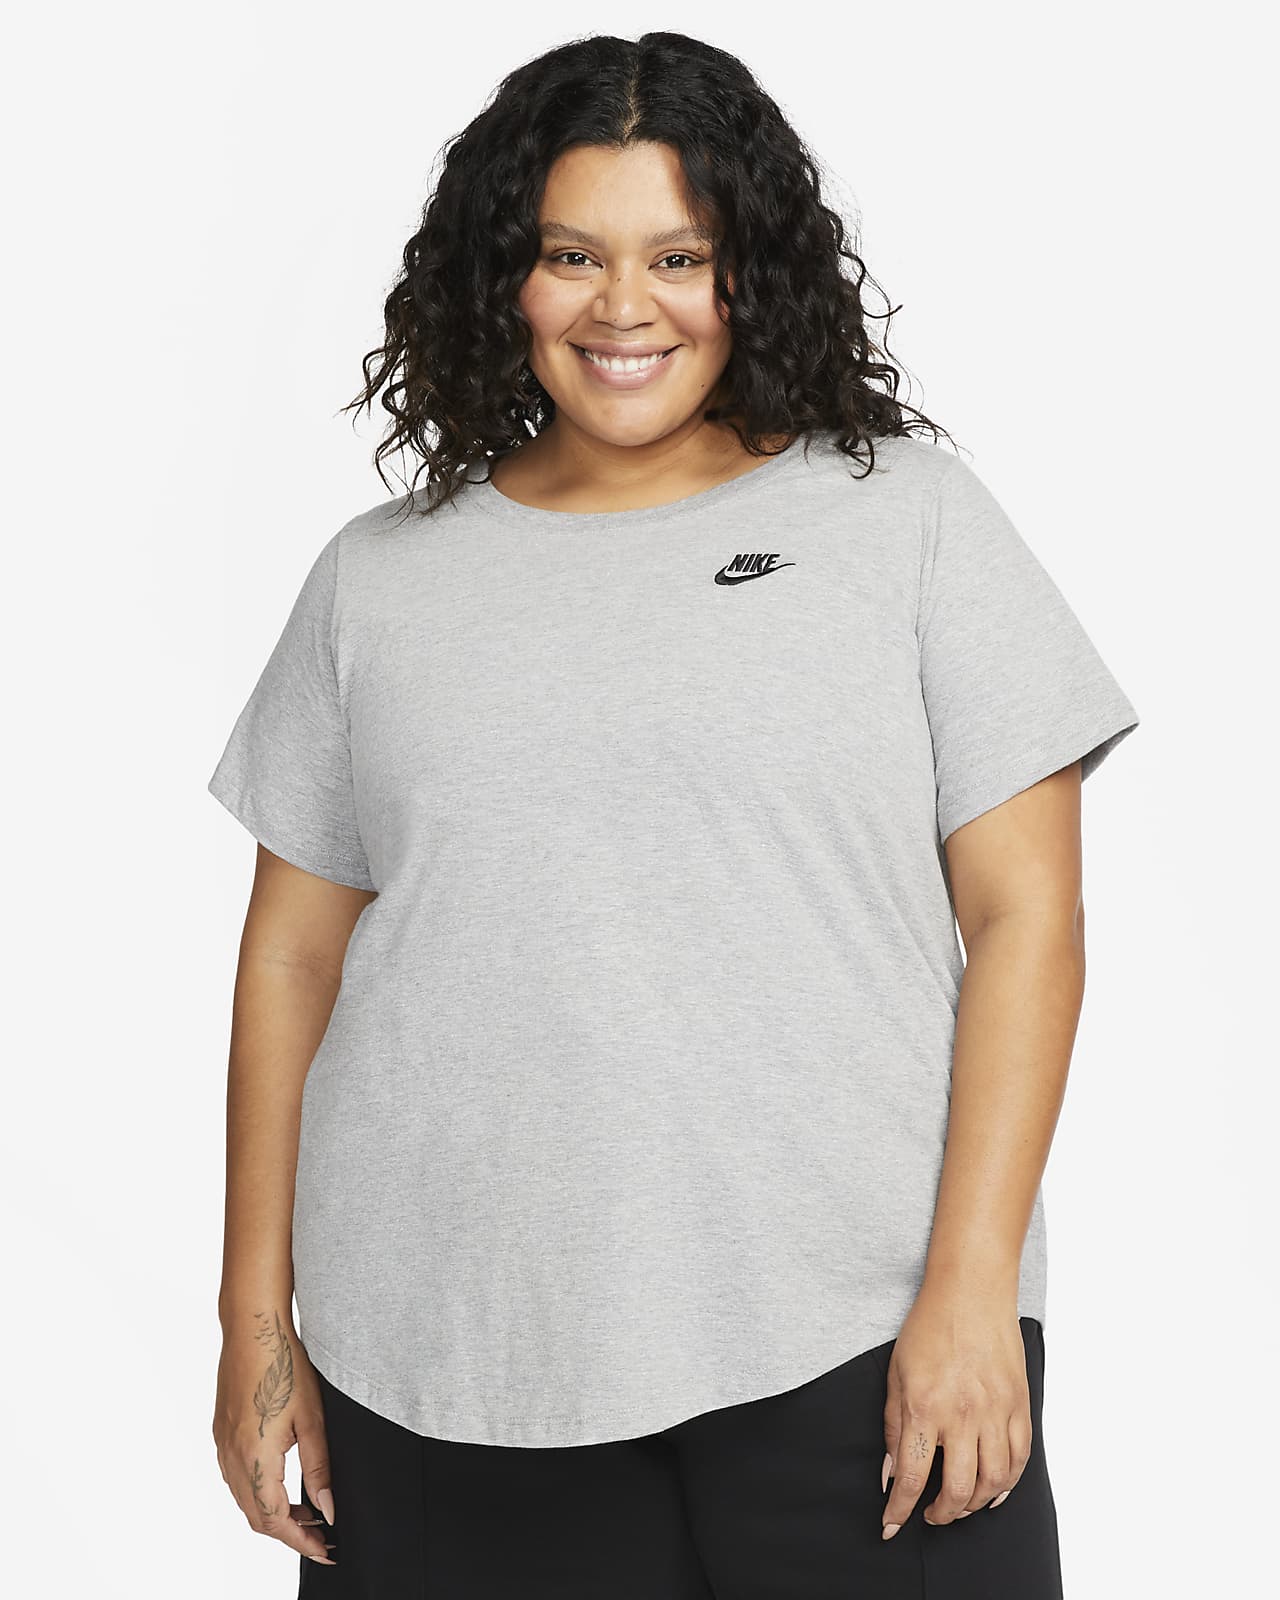 T-shirt Femme Nike CZ0903 noir blanc gris - Allemagne, Produits Neufs -  Plate-forme de vente en gros